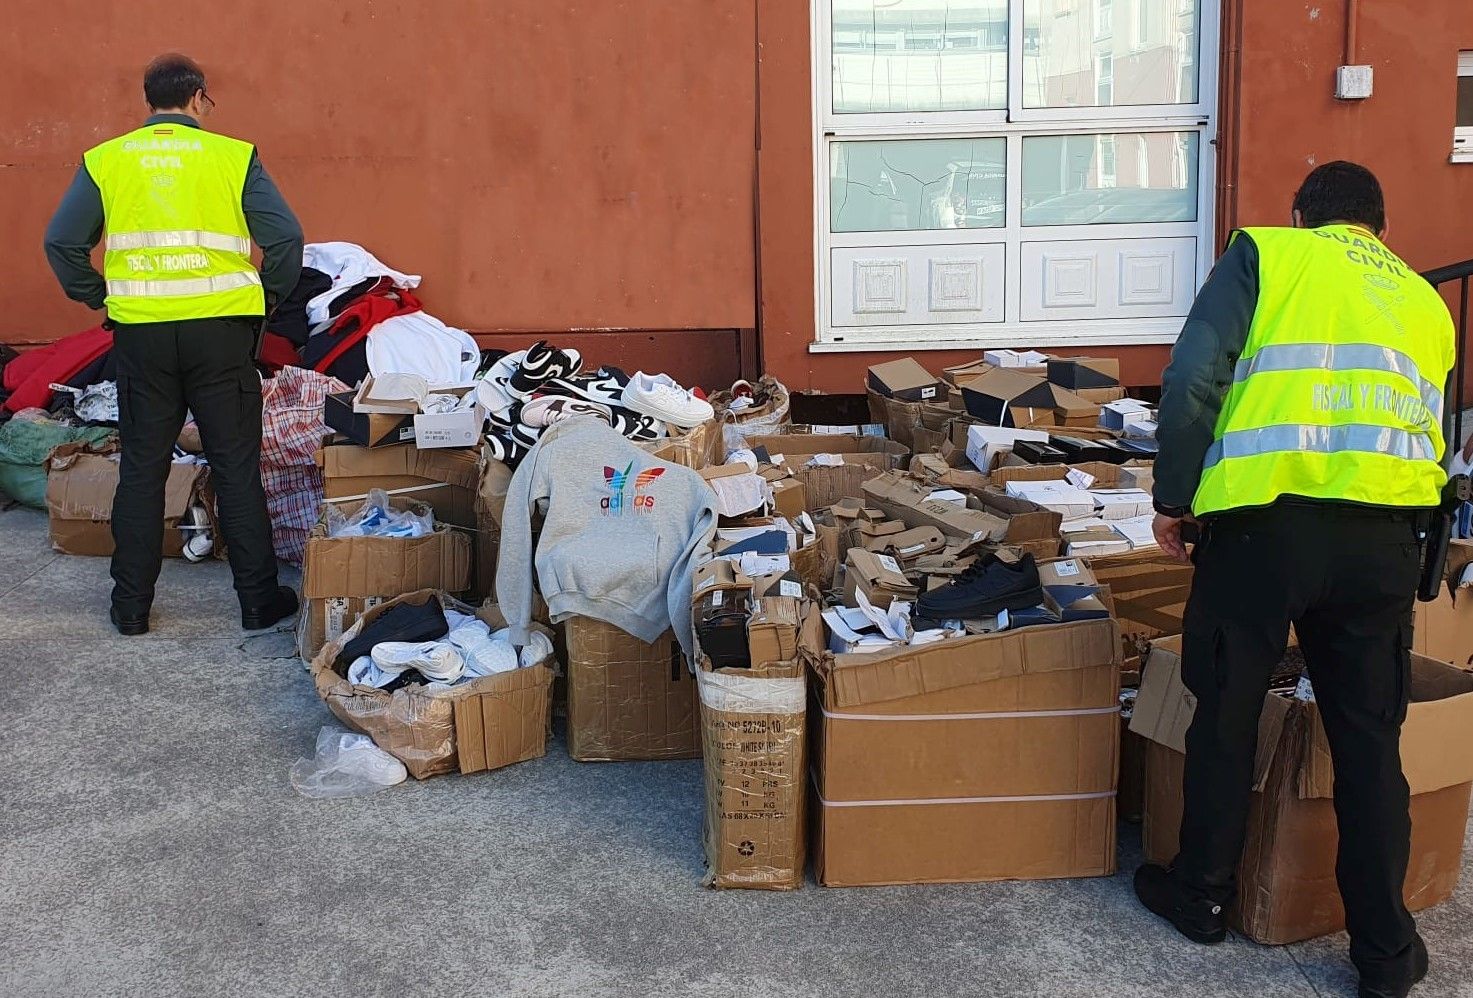 Prendas falsificadas incautadas por la Guardia Civil en una inspección en Vimianzo